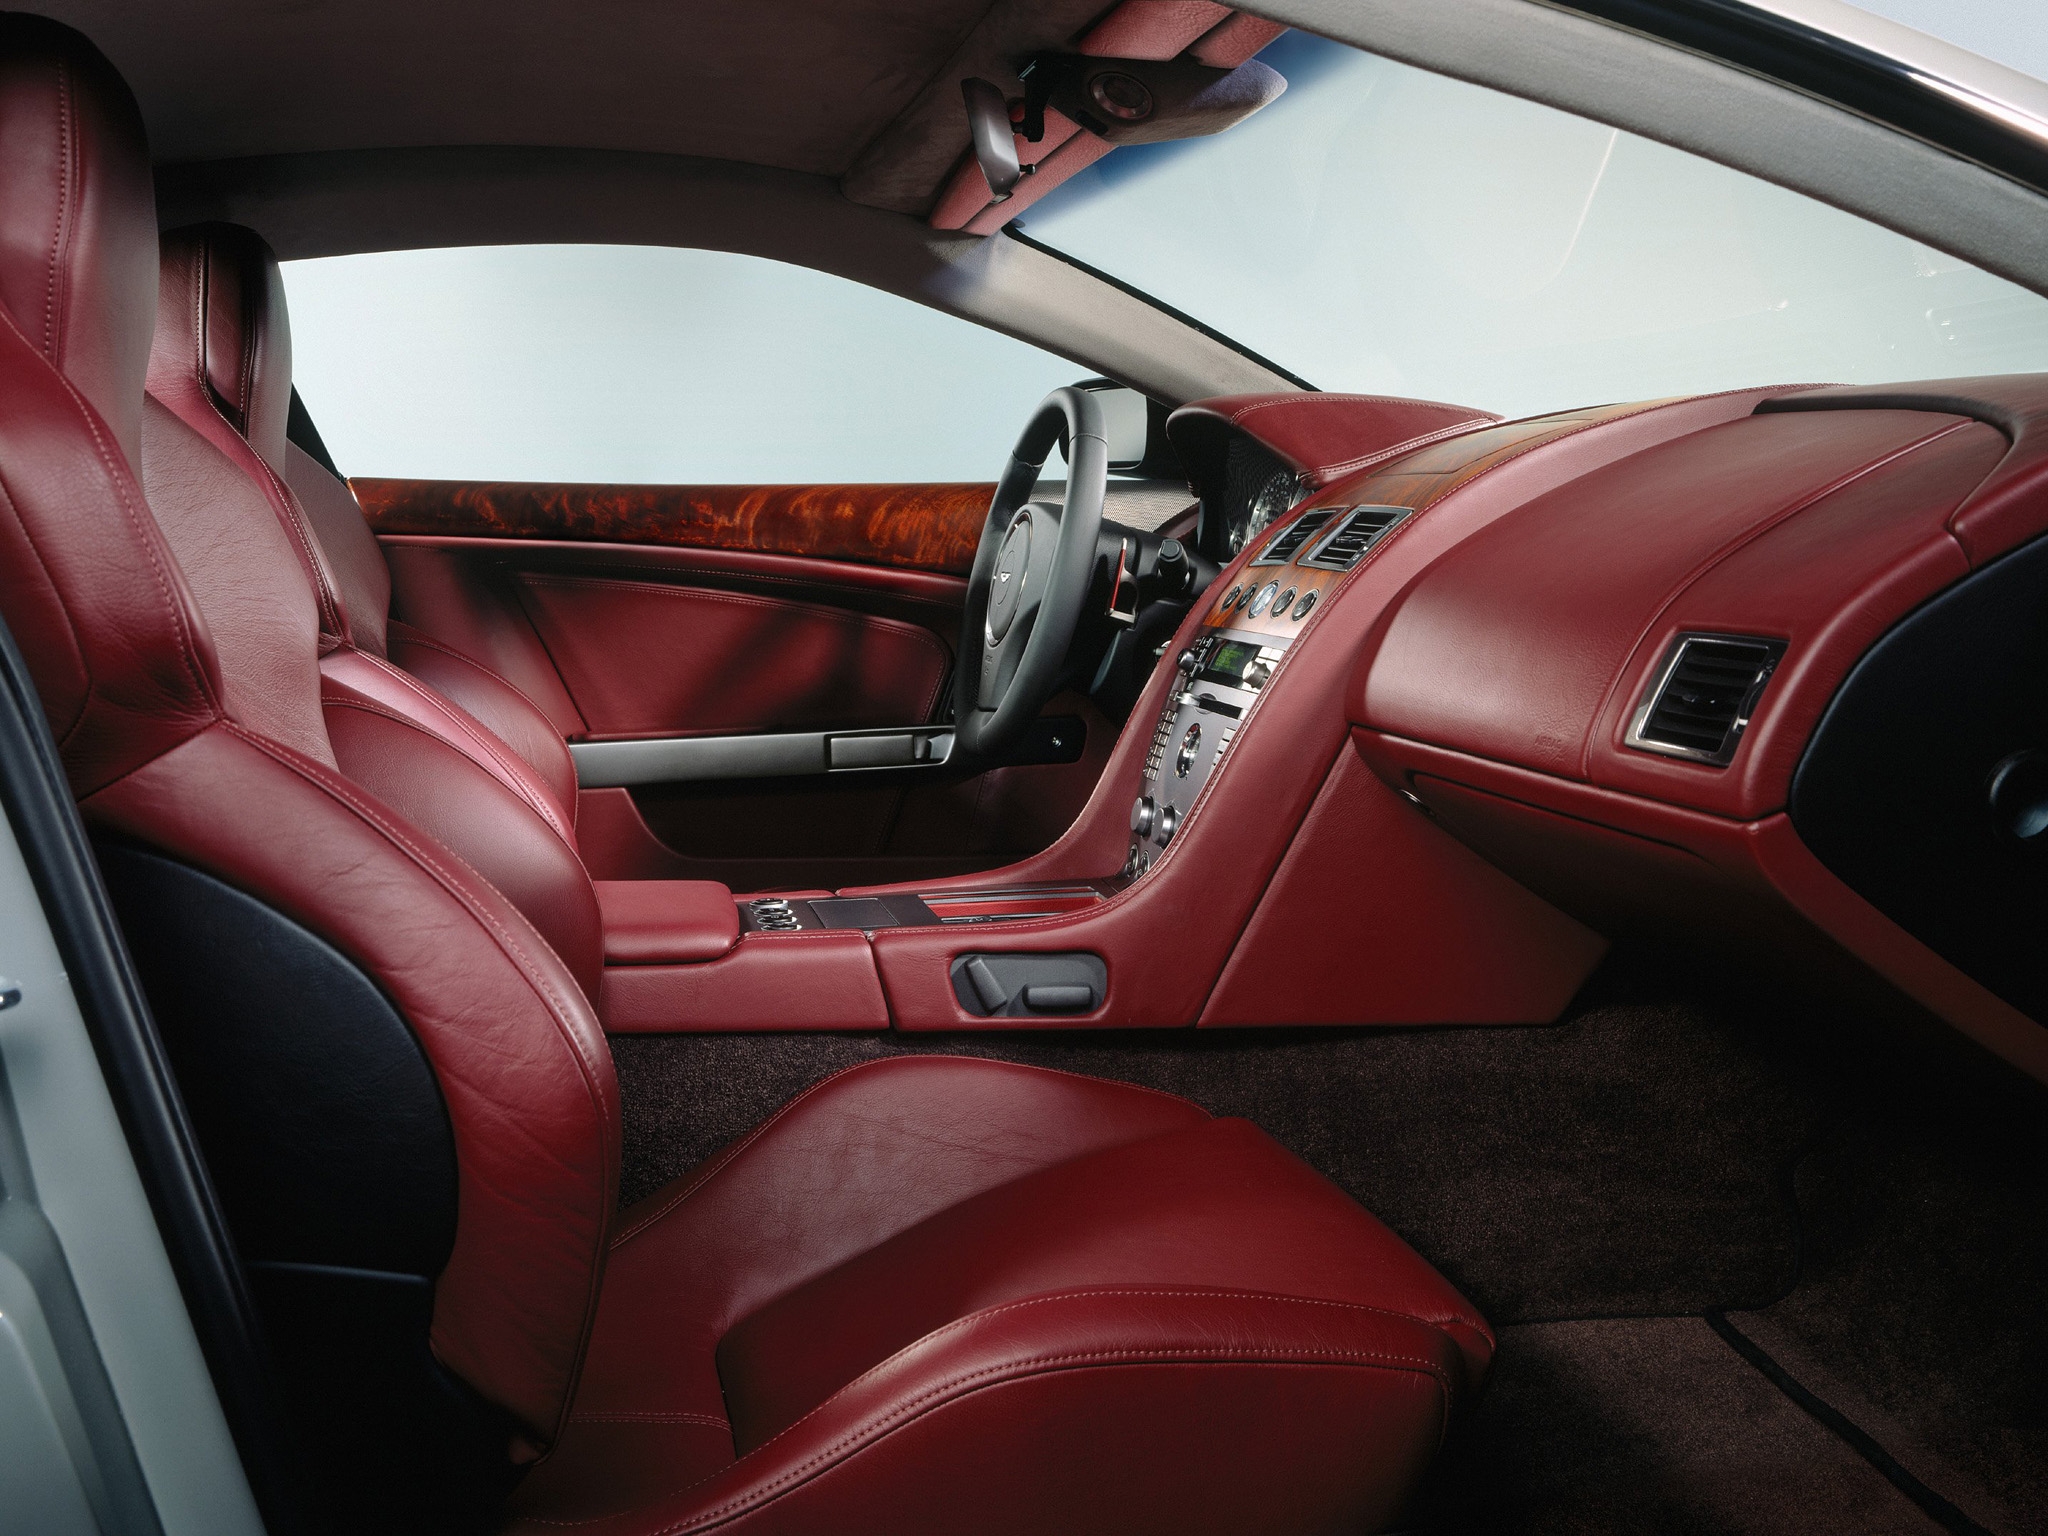 cars, interior, aston martin, red, steering wheel, rudder, salon, 2004, db9